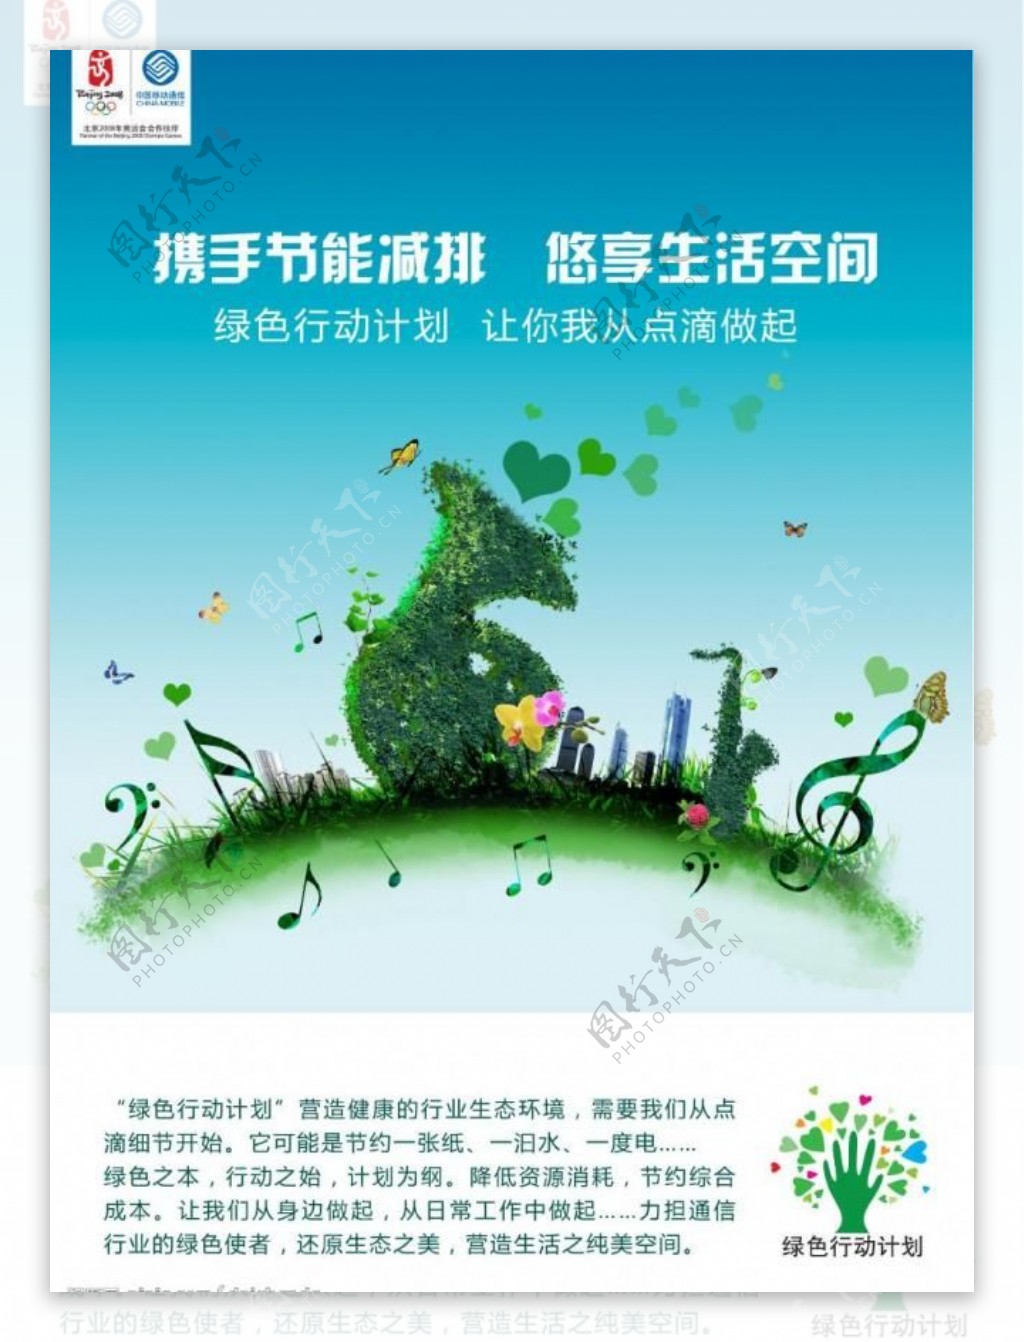 6月丨广州丨绿色行动计划2图片